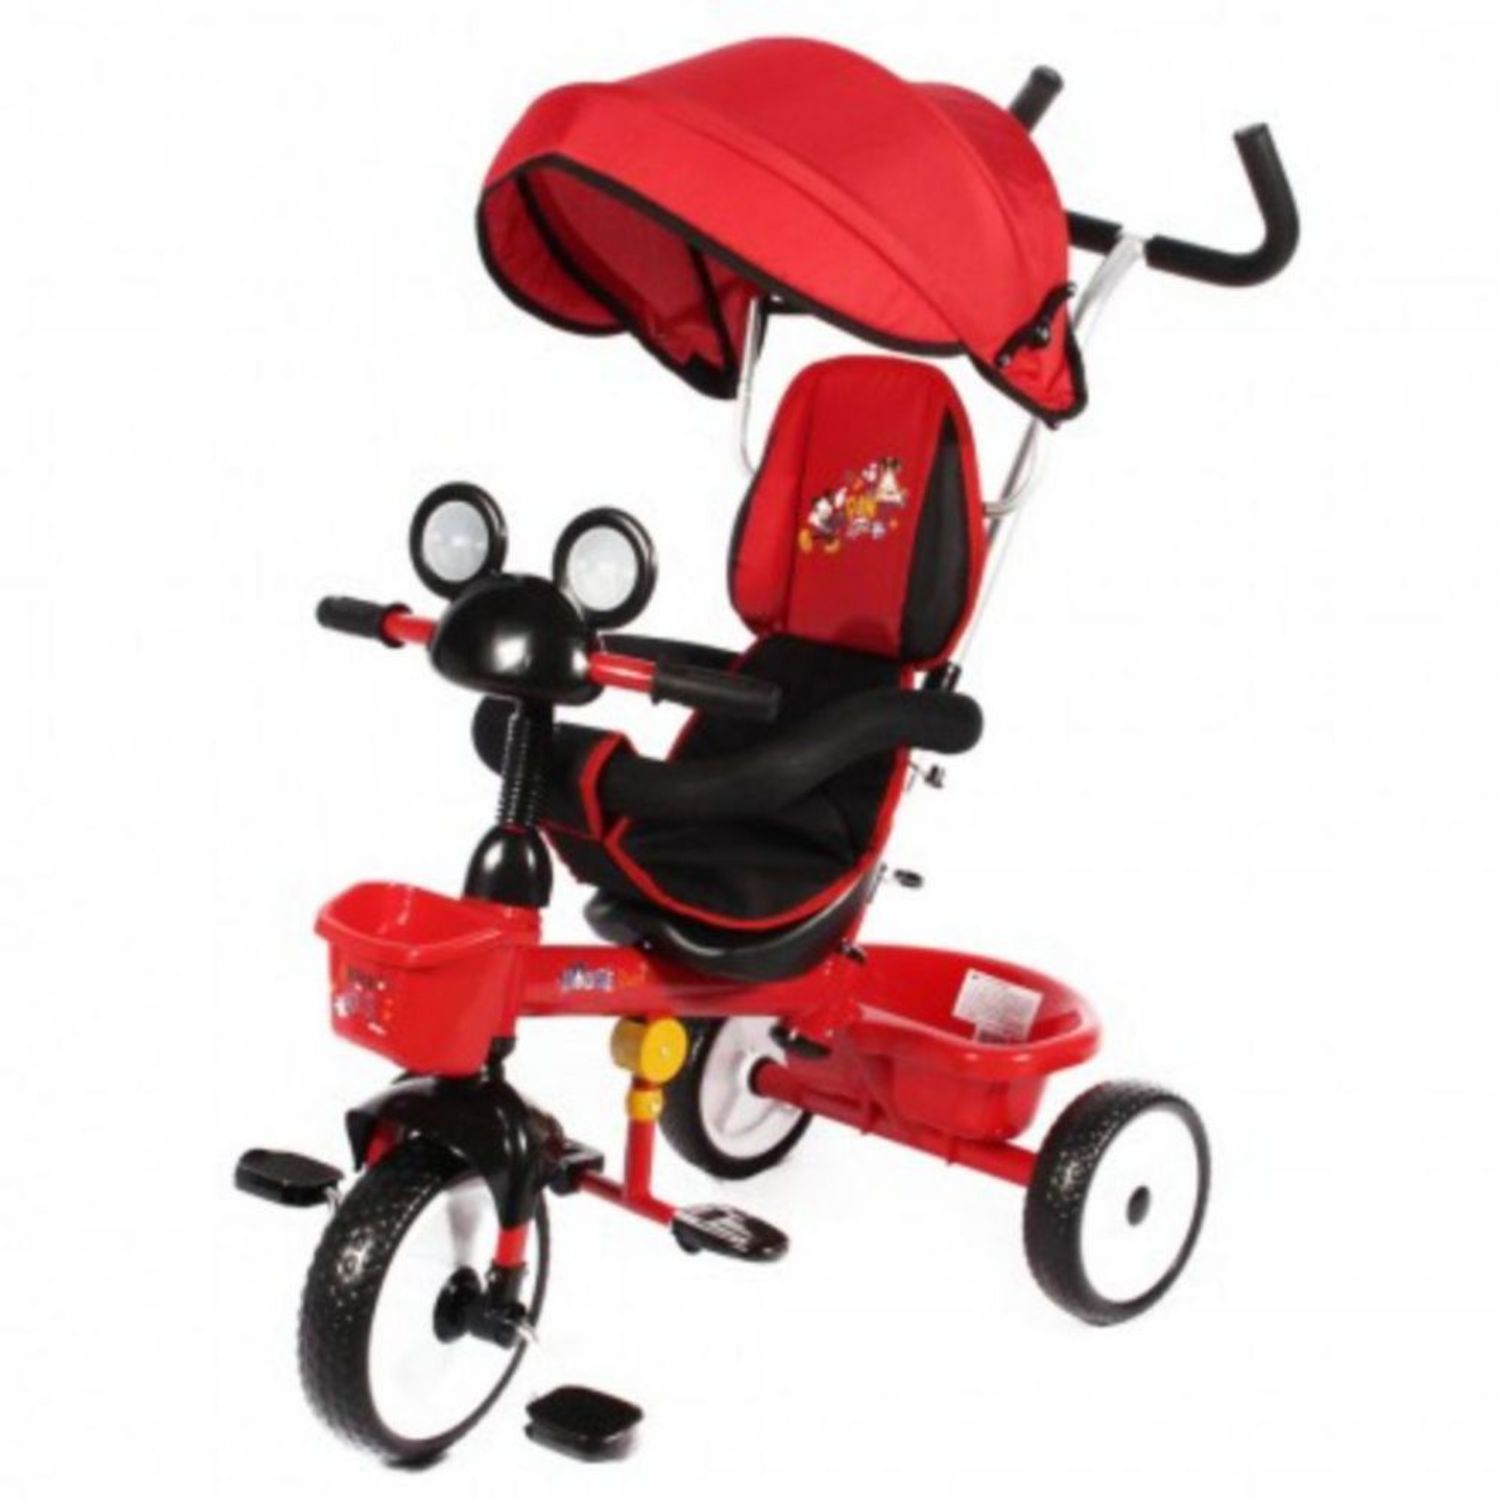 Vacaciones Imposible Empuje Triciclo Infanti 3 En 1 Rojo | Oechsle.pe - Oechsle